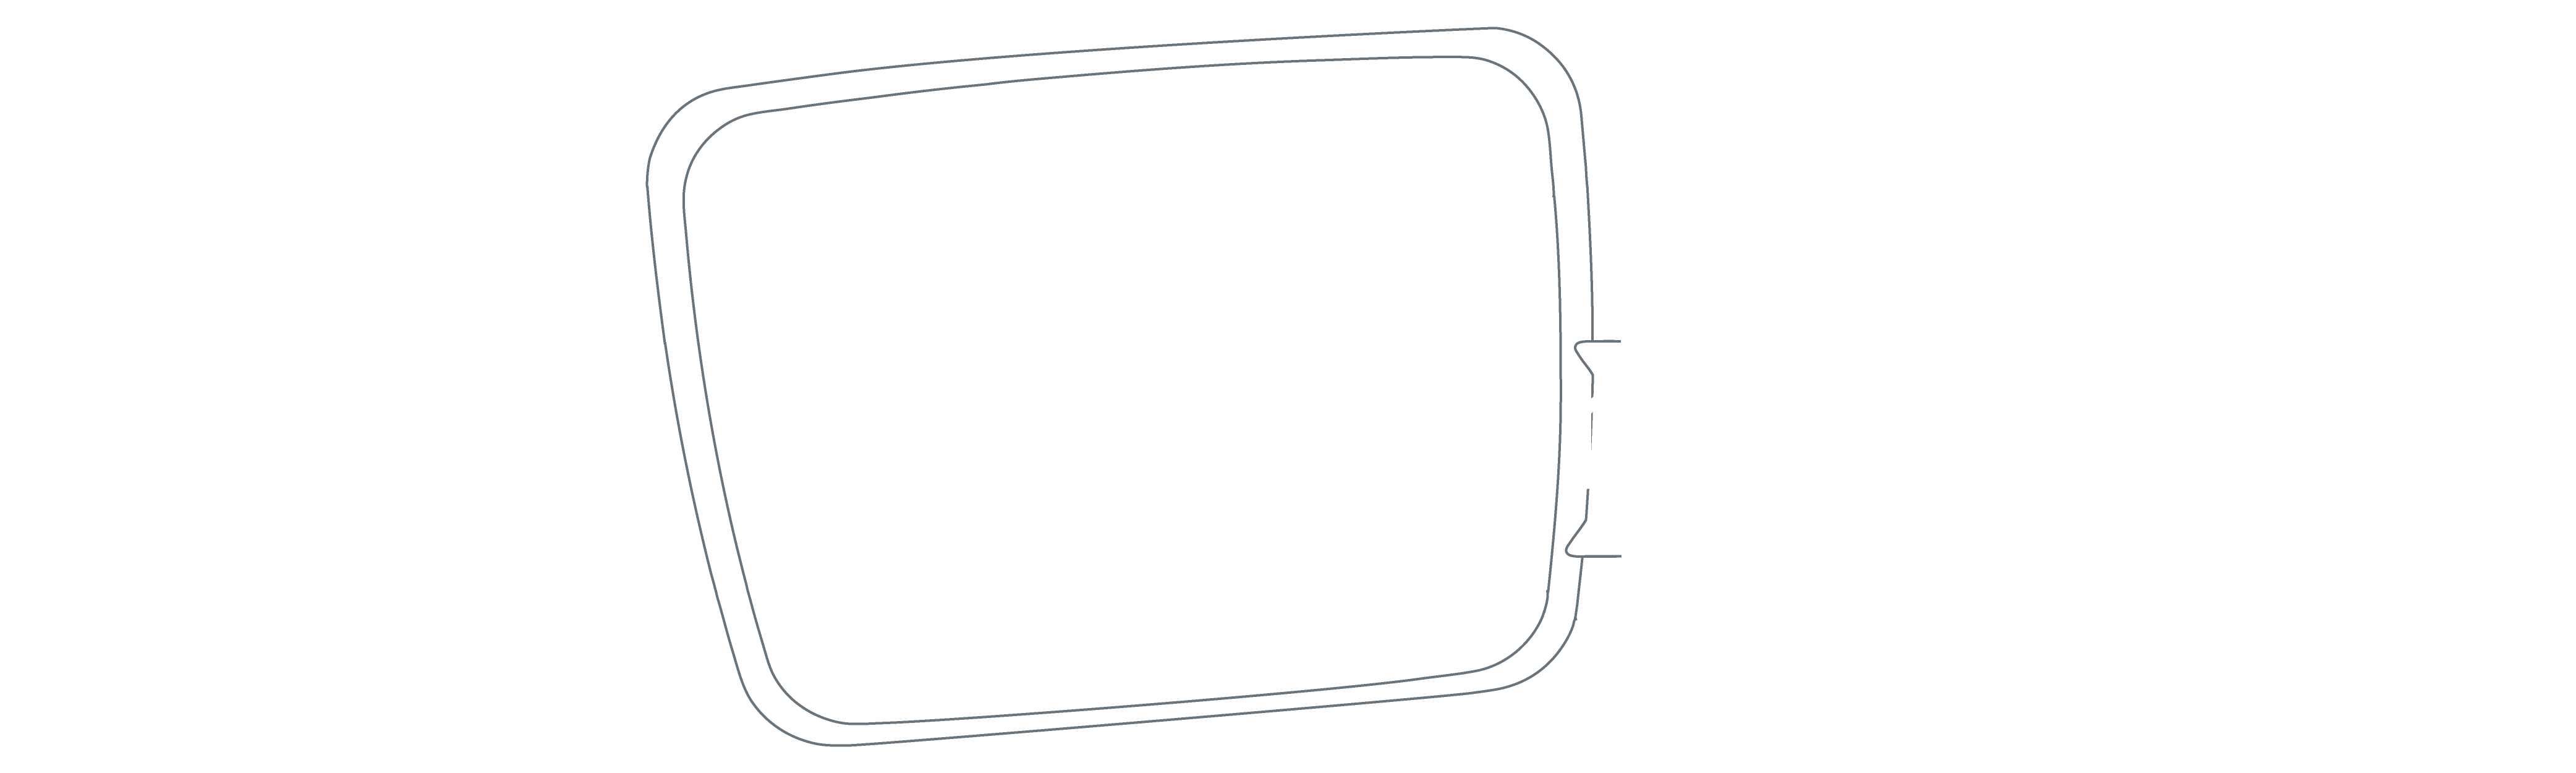 logo Julumed